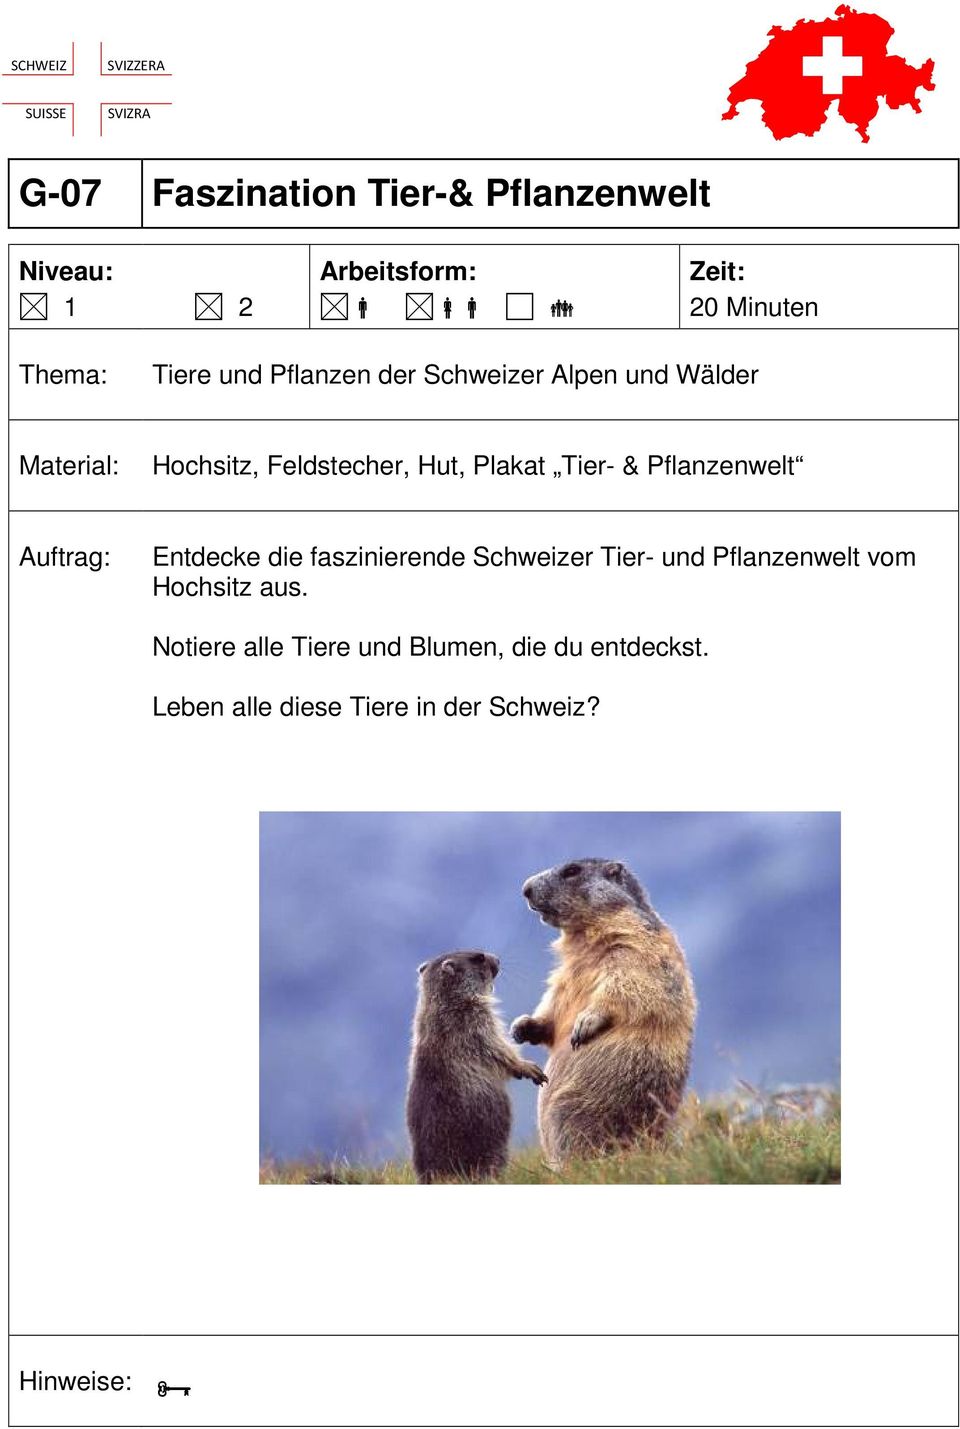 die faszinierende Schweizer Tier- und Pflanzenwelt vom Hochsitz aus.